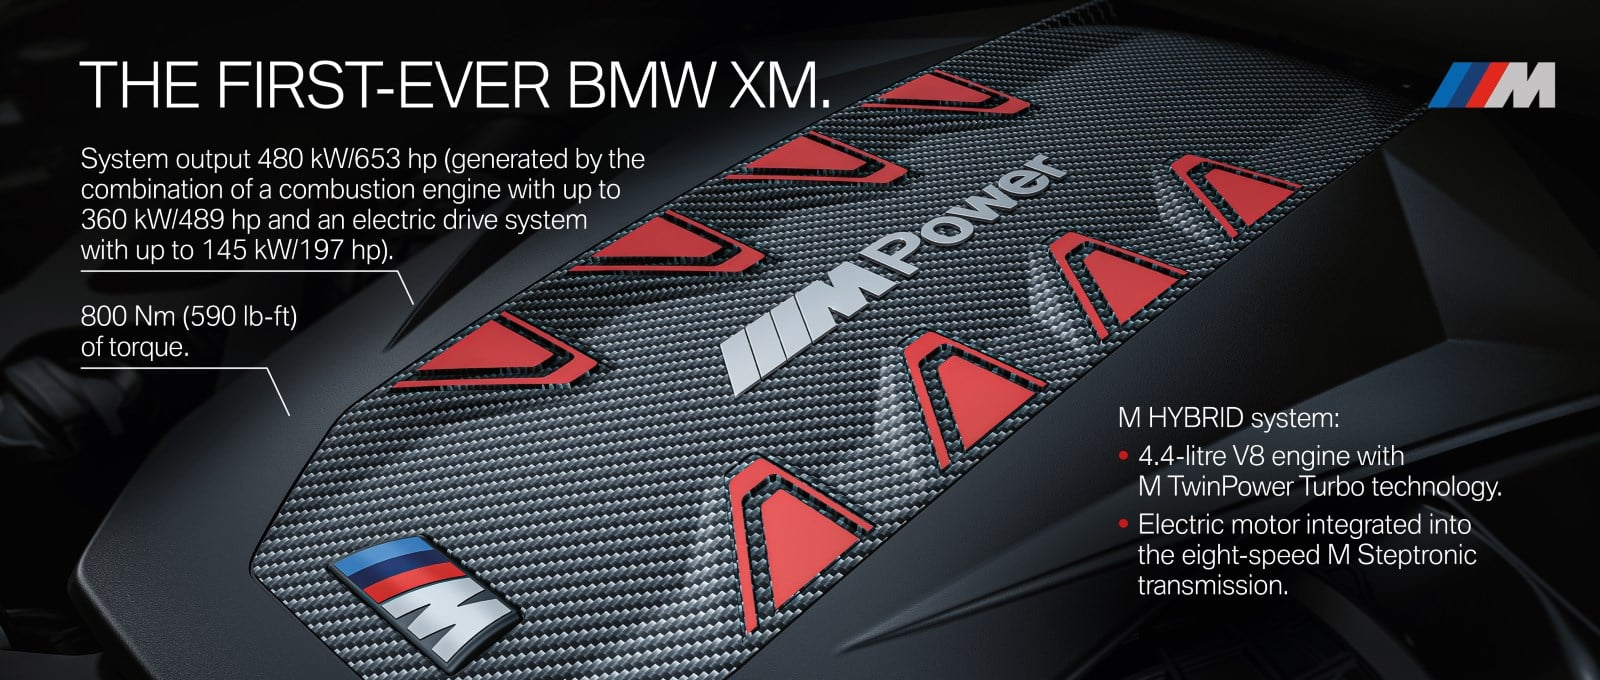 BMW XM G09 - первый гибрид в истории BMW M GmbH 4